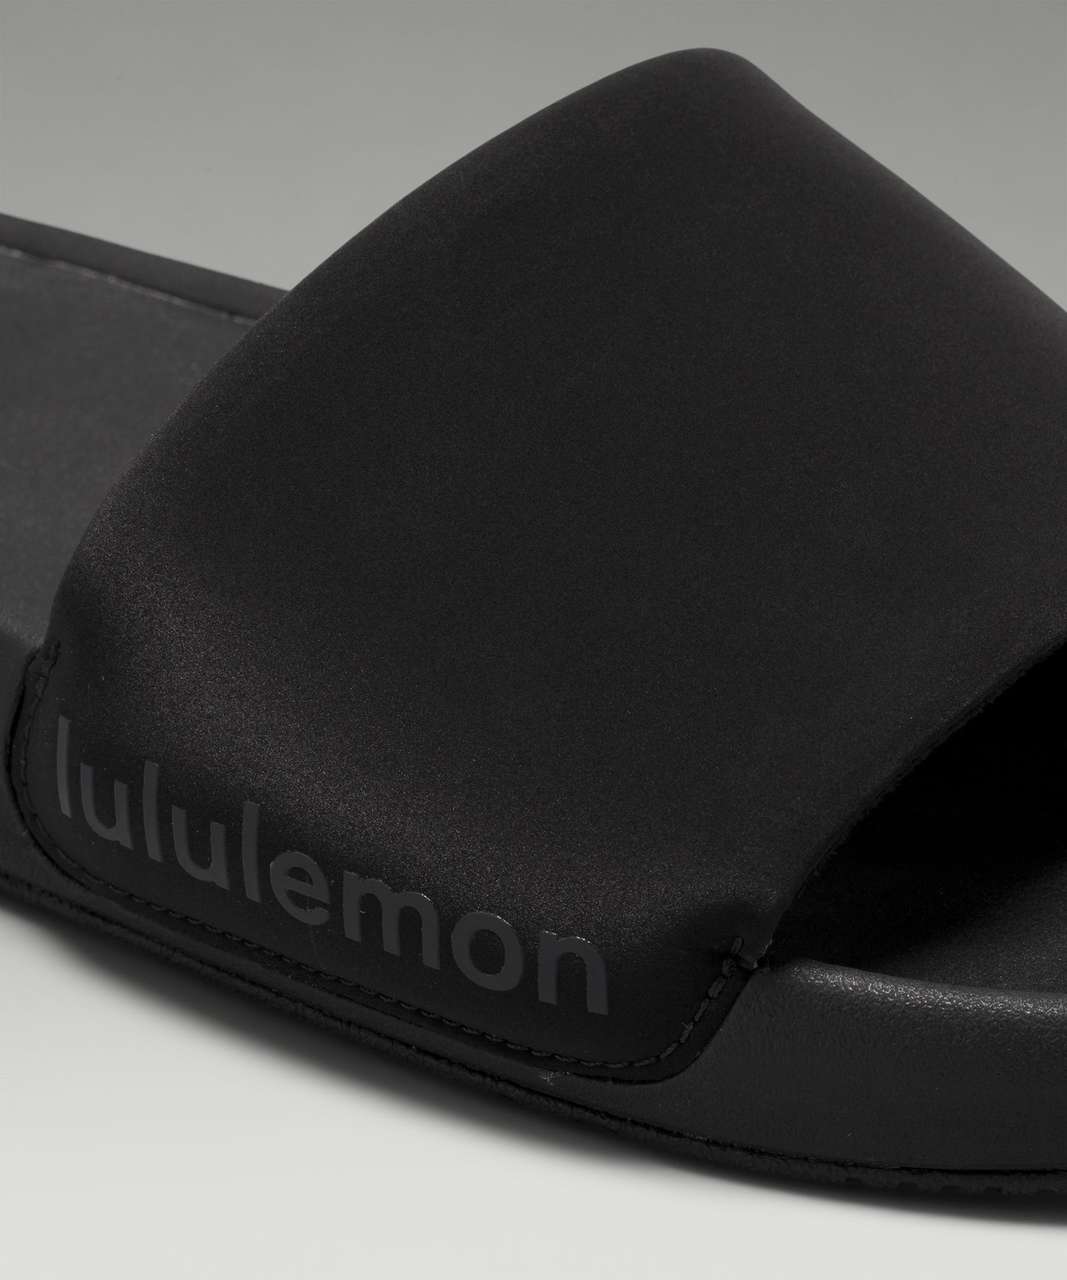 Lululemon Restfeel Womens Slide - Black / Graphite Grey